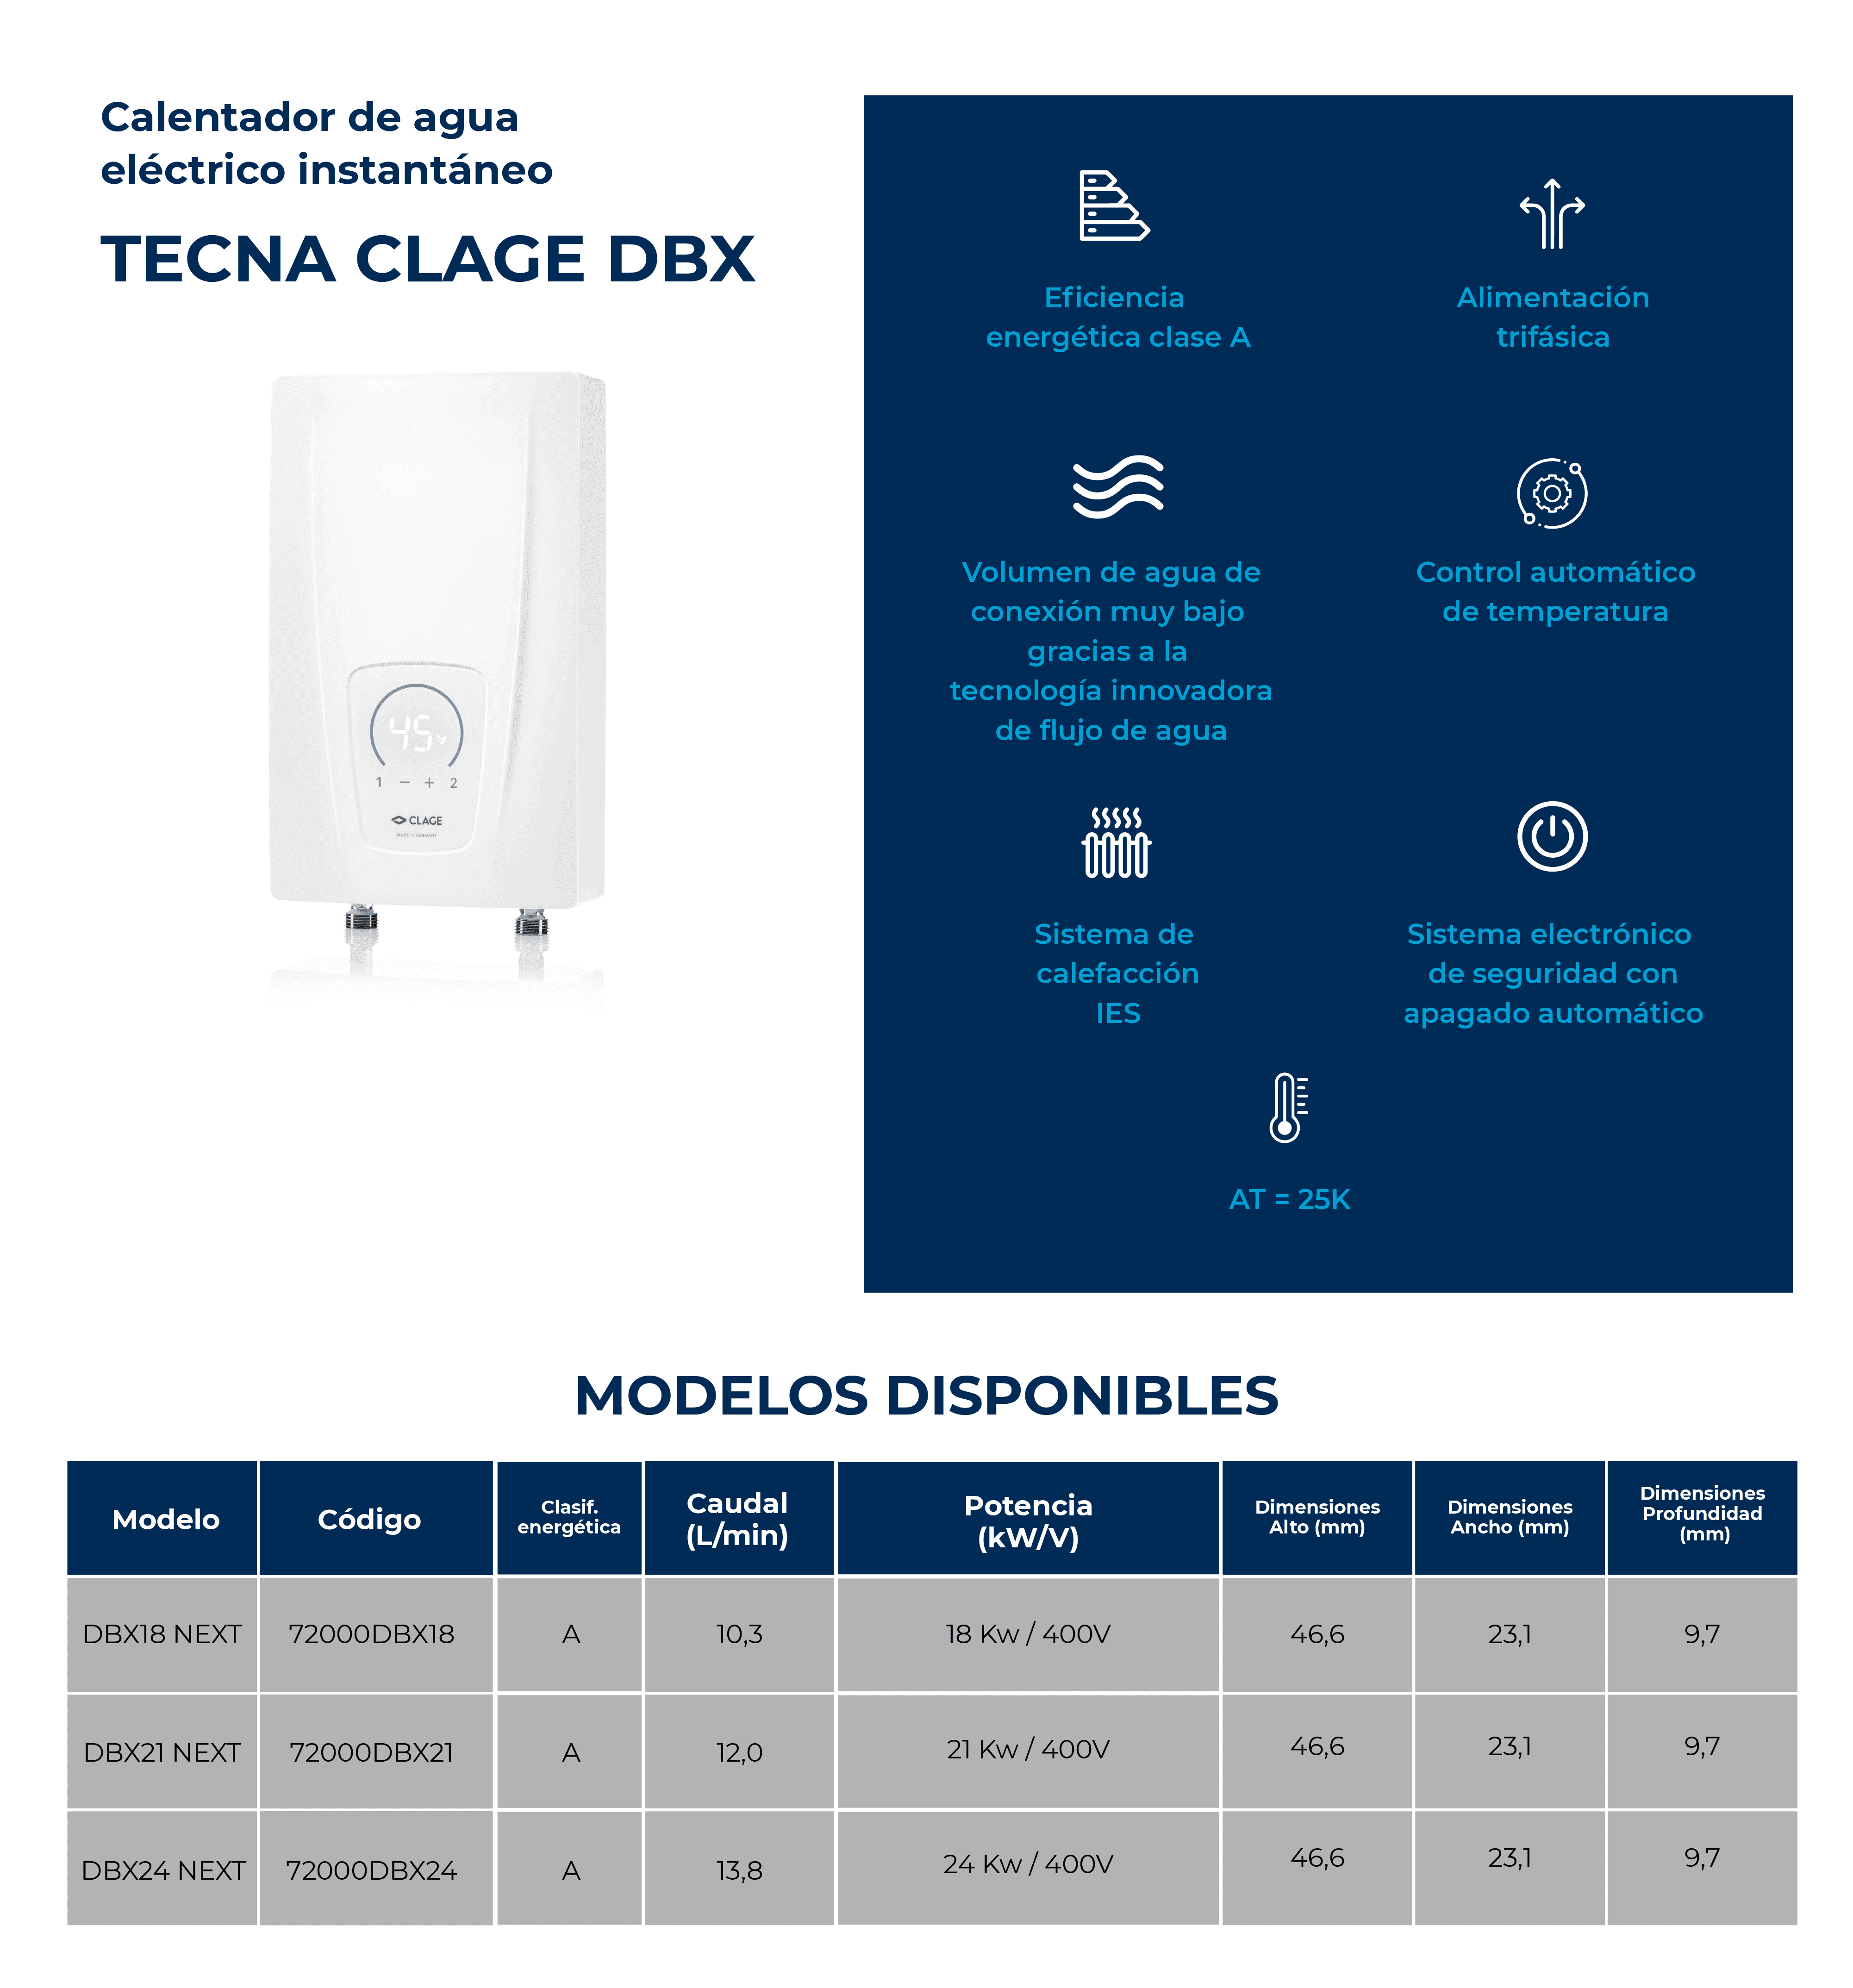 Calentador eléctrico instanáneo TECNA CLAGE DBX NEXT